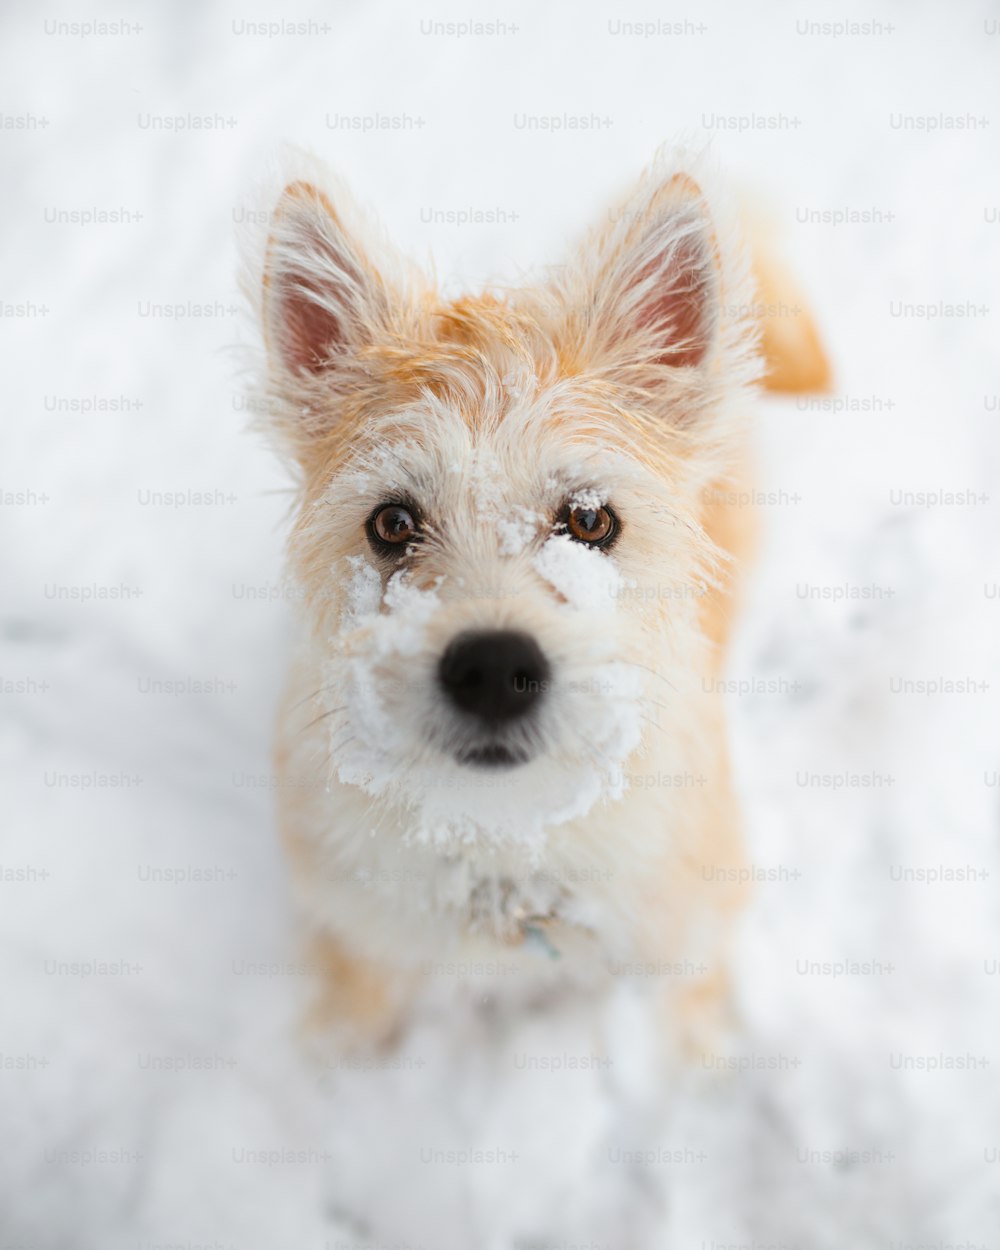 Ein kleiner brauner Hund, der auf schneebedecktem Boden steht